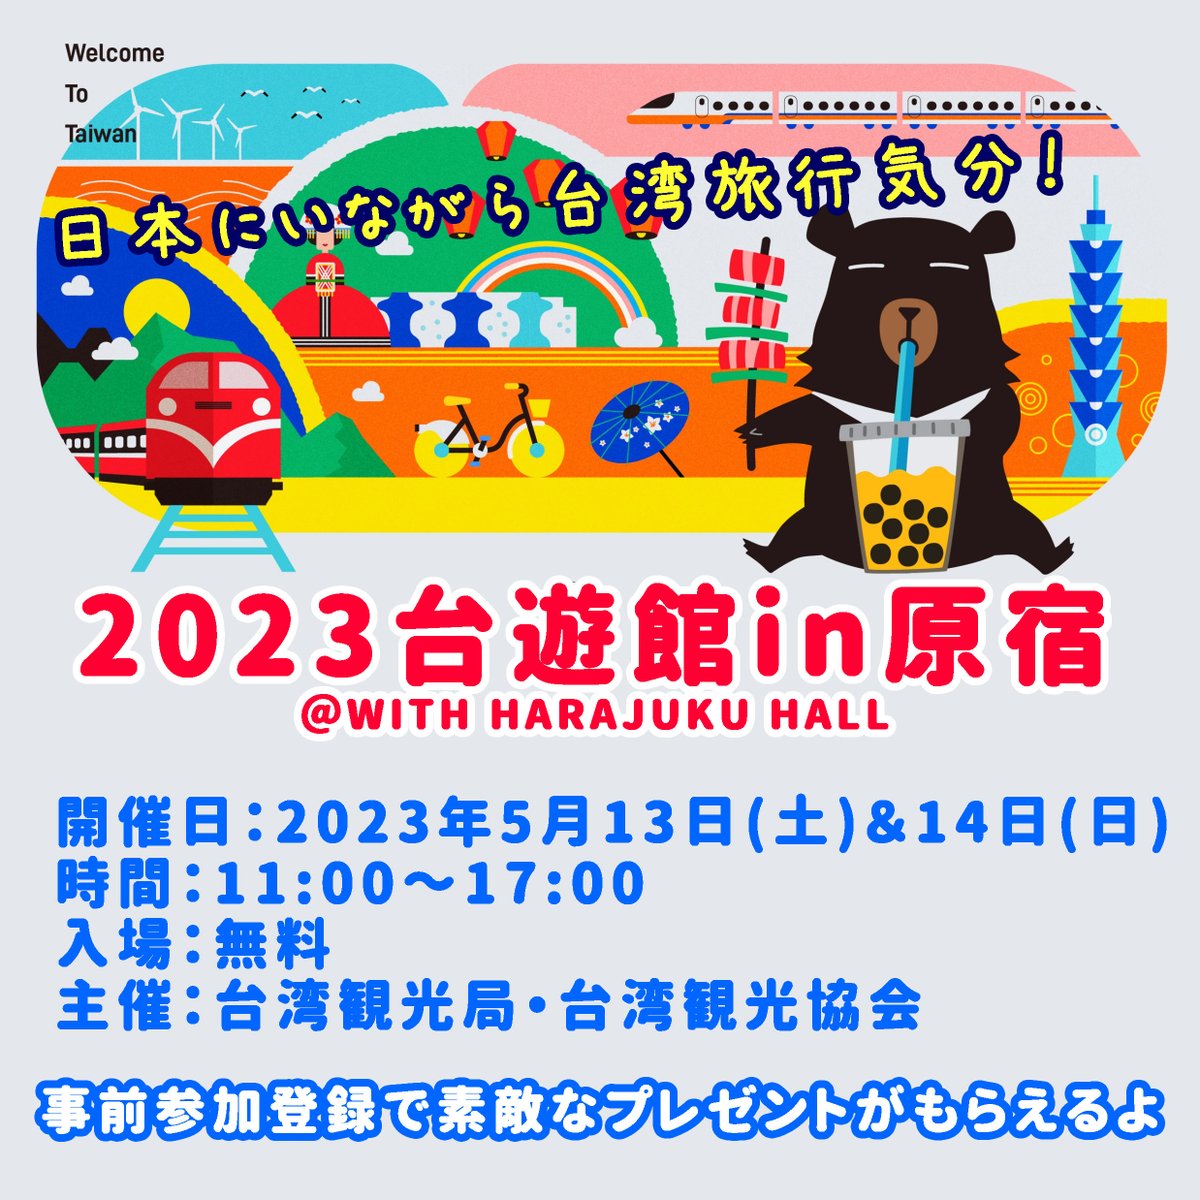 【台湾イベント】 台湾観光局と台湾観光協会が気合を入れているイベント「2023台遊館」は今週末(5/13～5/14)開催🇹🇼 詳細はオフィシャルサイトを見るべし～🧐 で、色々わからないことがあったので、聞いてみました👂 🔽続く🔽